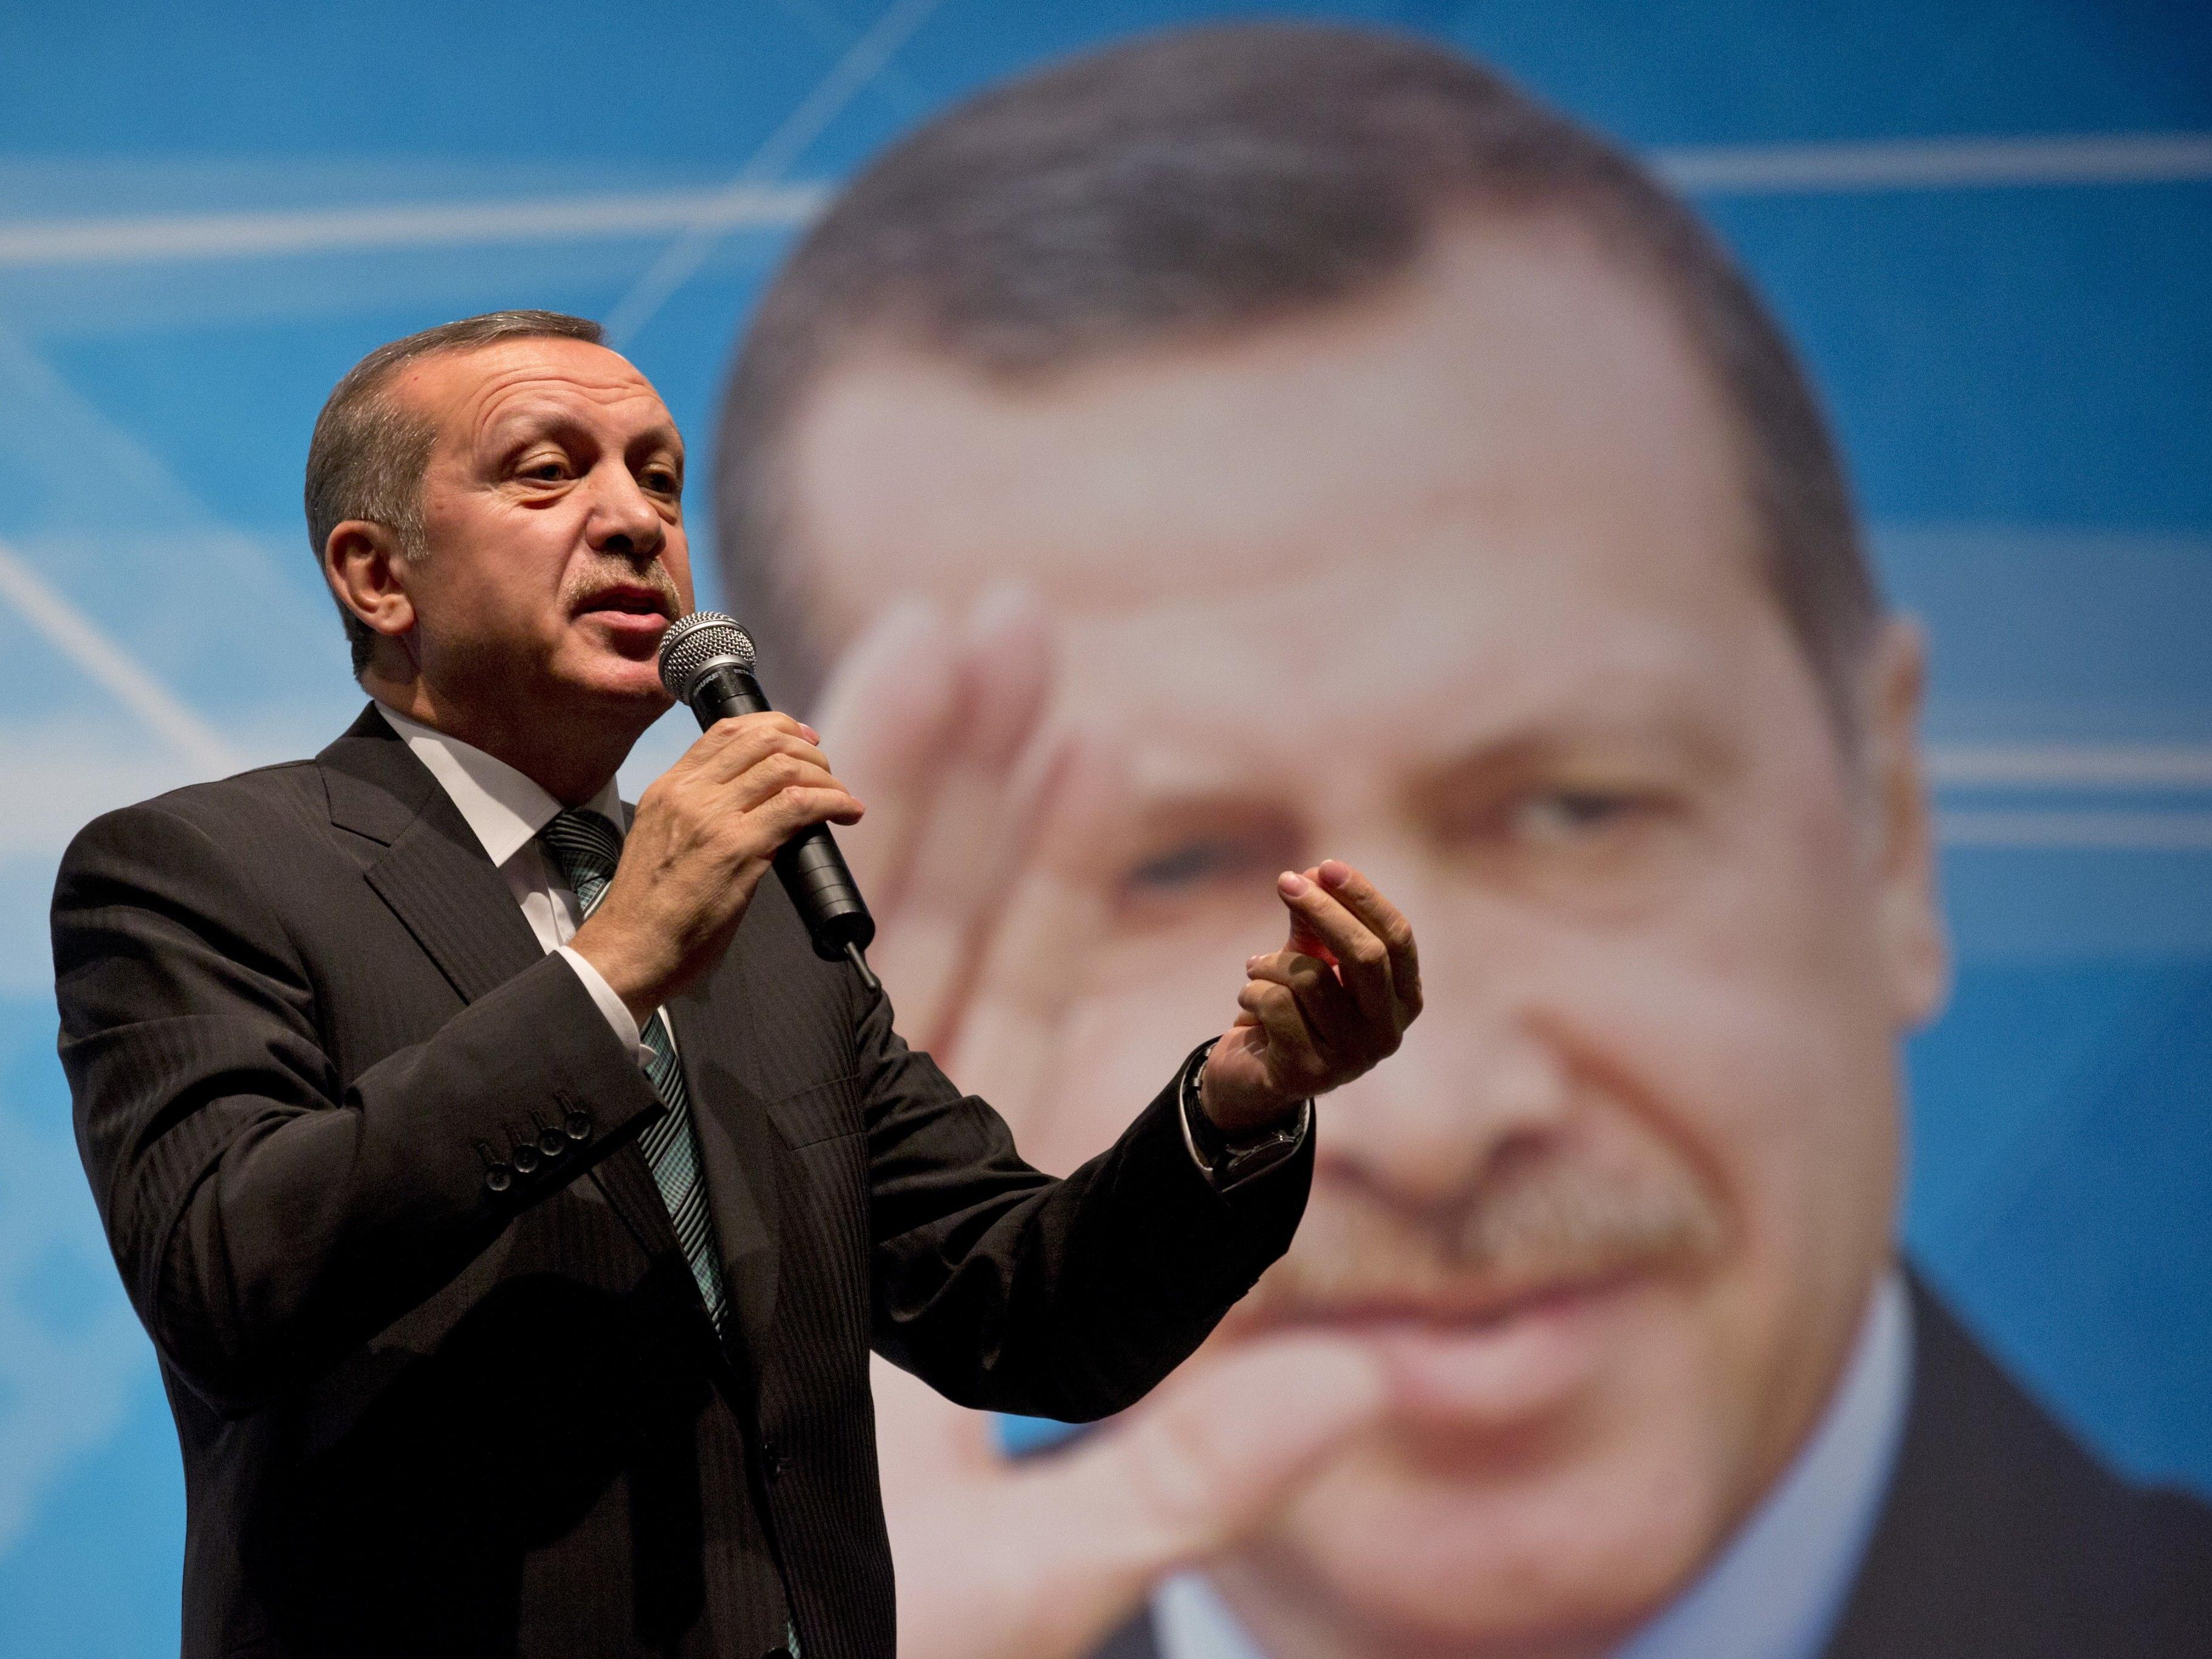 Der türkische Präsident Erdogan konnte durch das Referendum seine Macht ausbauen.